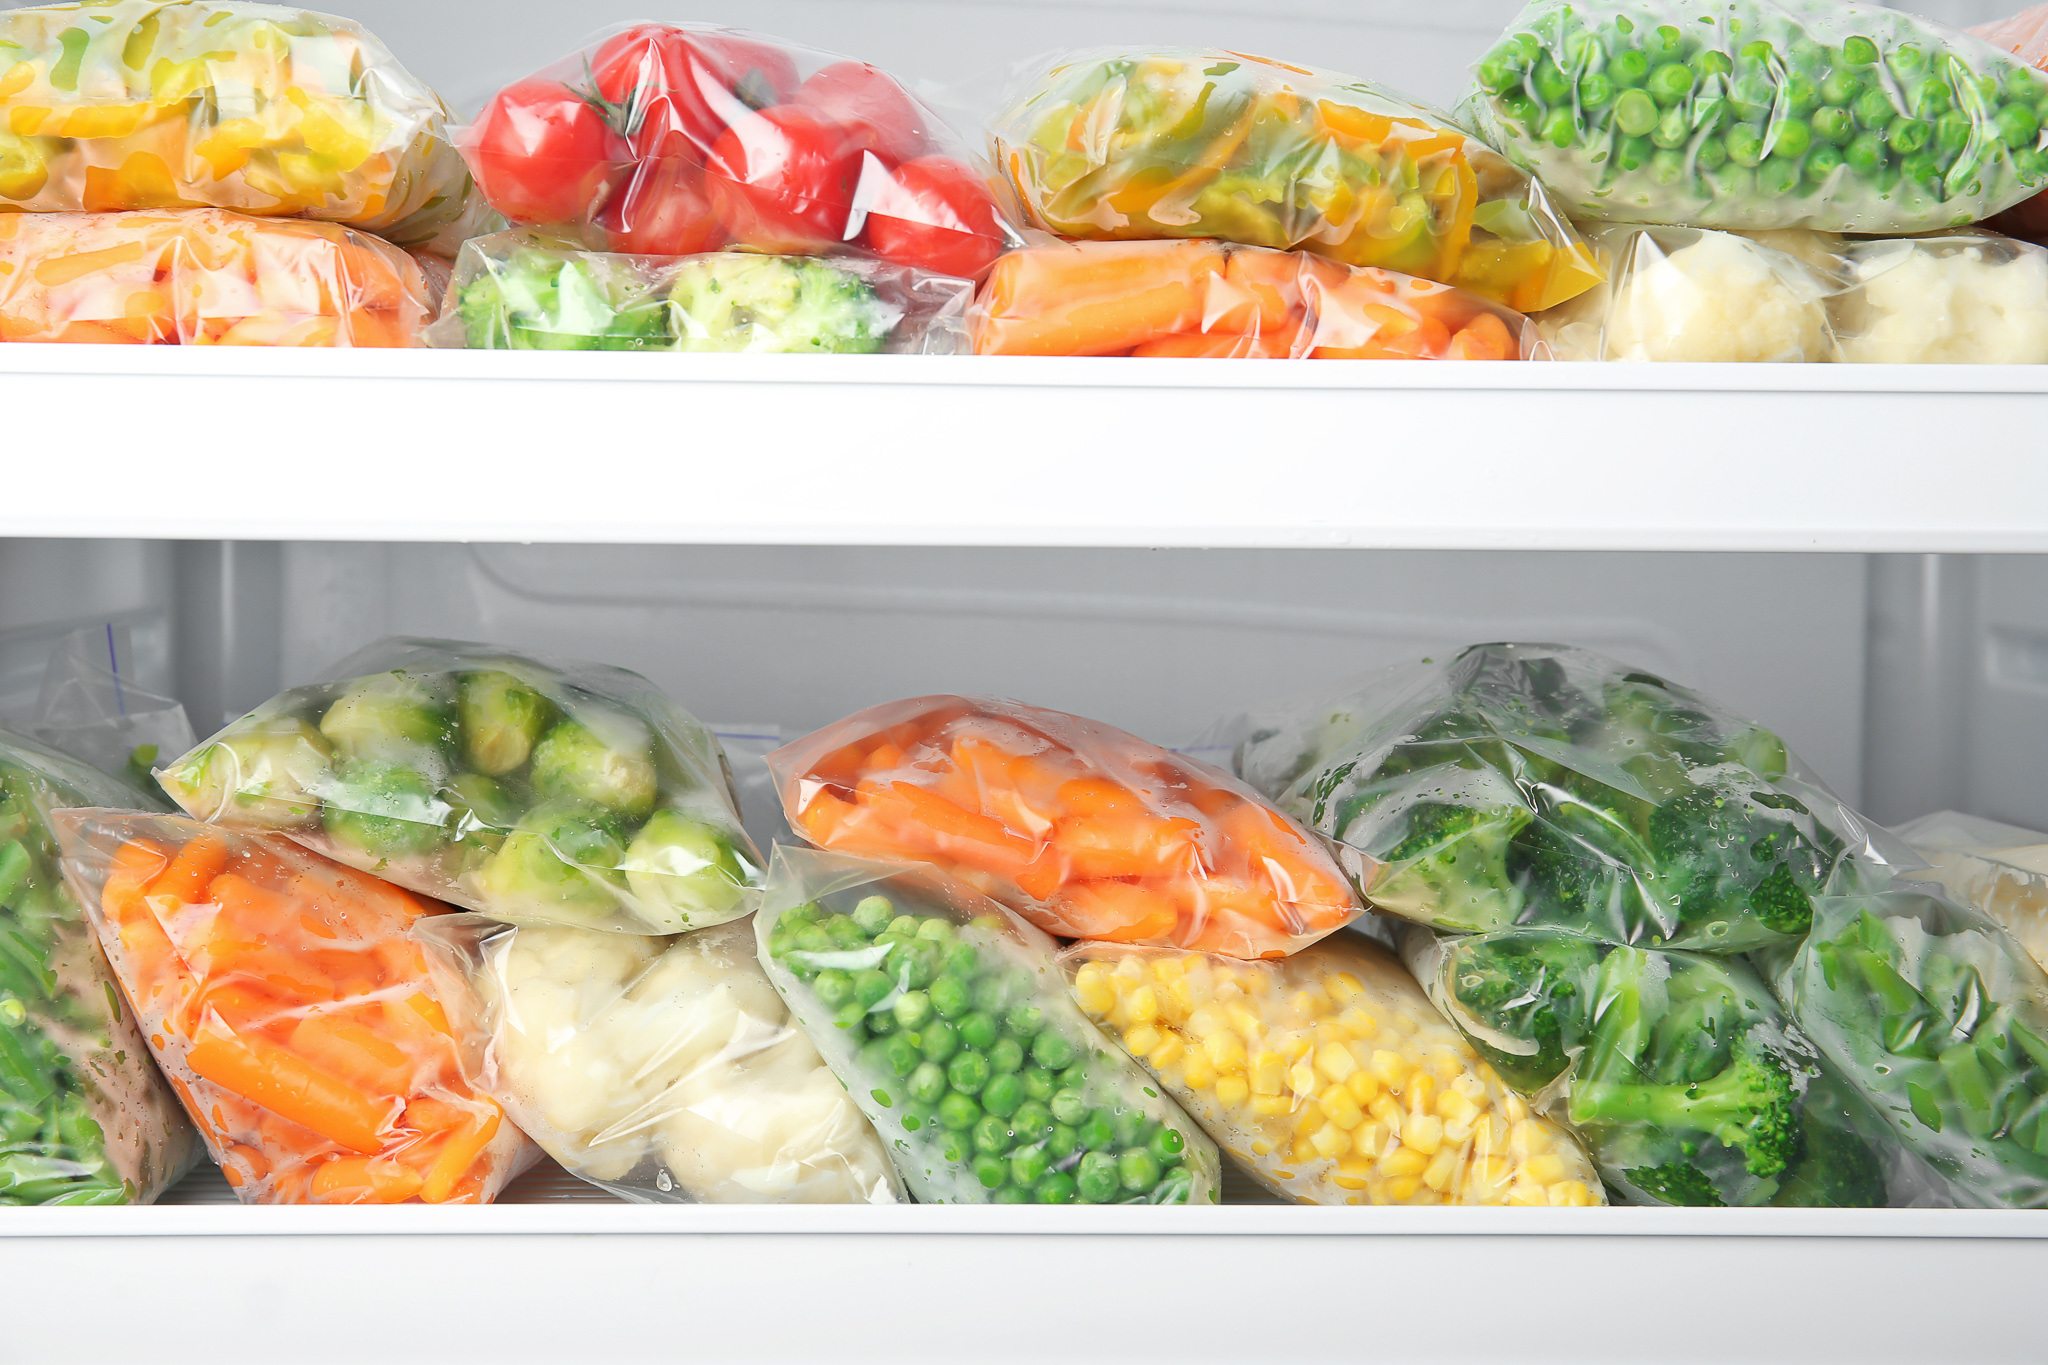 Заморозка начнет. Хранение продуктов в холодильнике. Морозилки с овощами в магазинах. Контейнеры для овощей и фруктов в холодильниках с картинками. Разделитель в холодильник для овощей и фруктов.